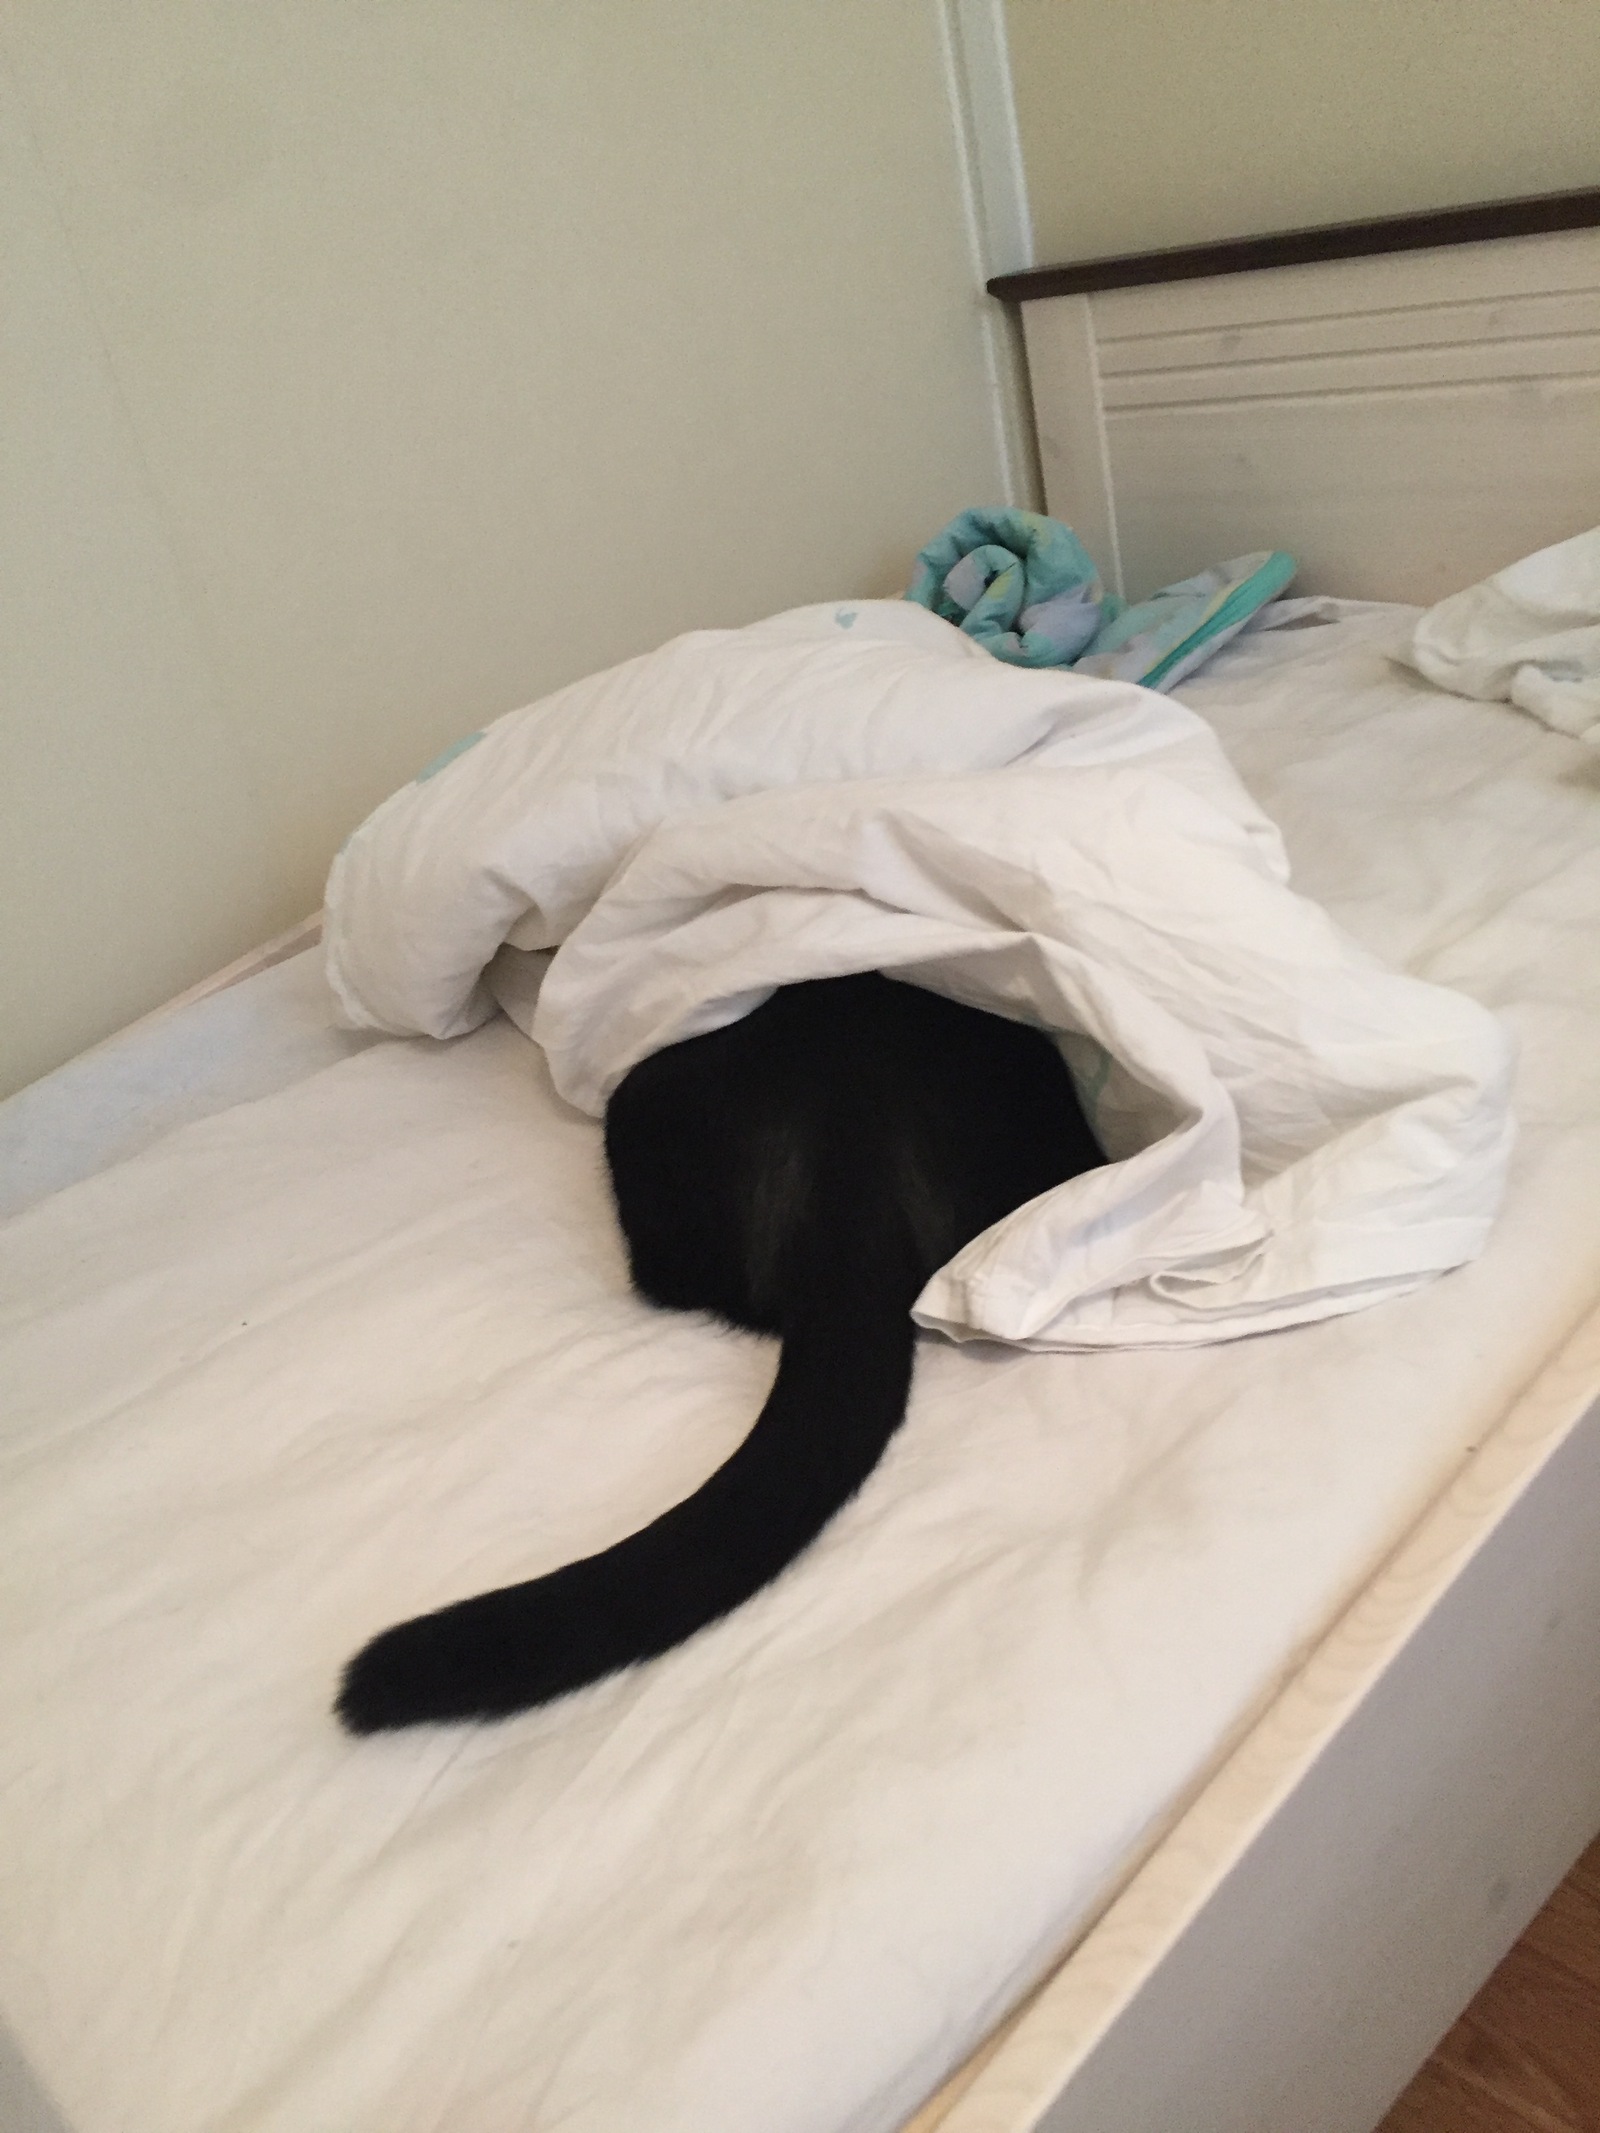 Котик спрятался под одеялом